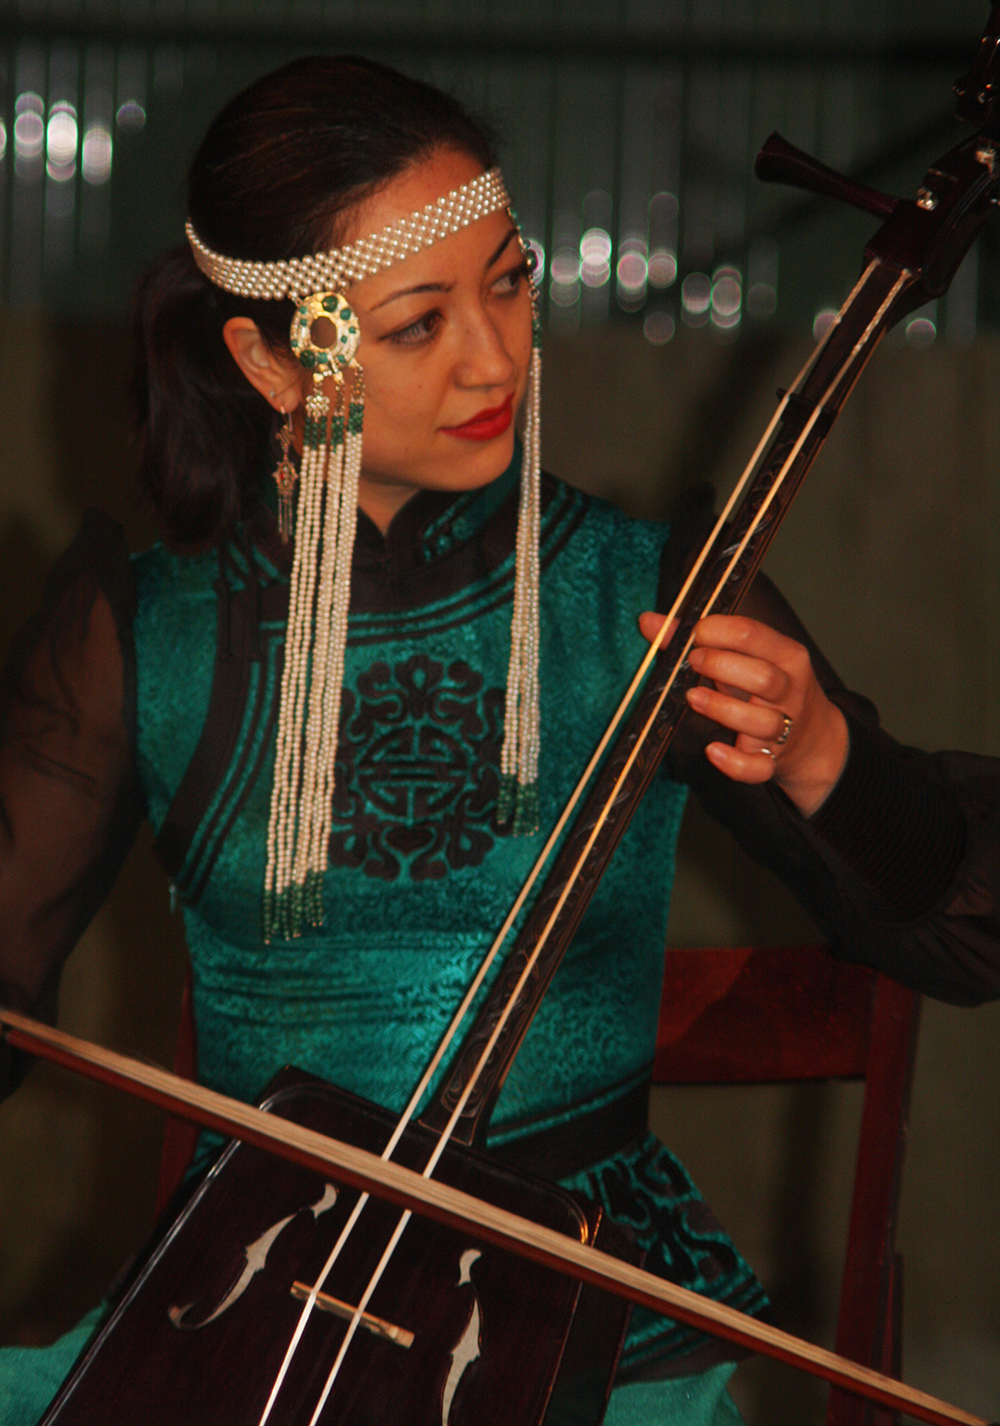 Rire78.com - Les Spectacles Patrimoine - Représentation Haras de Vauptain à Buc - Musique de Mongolie